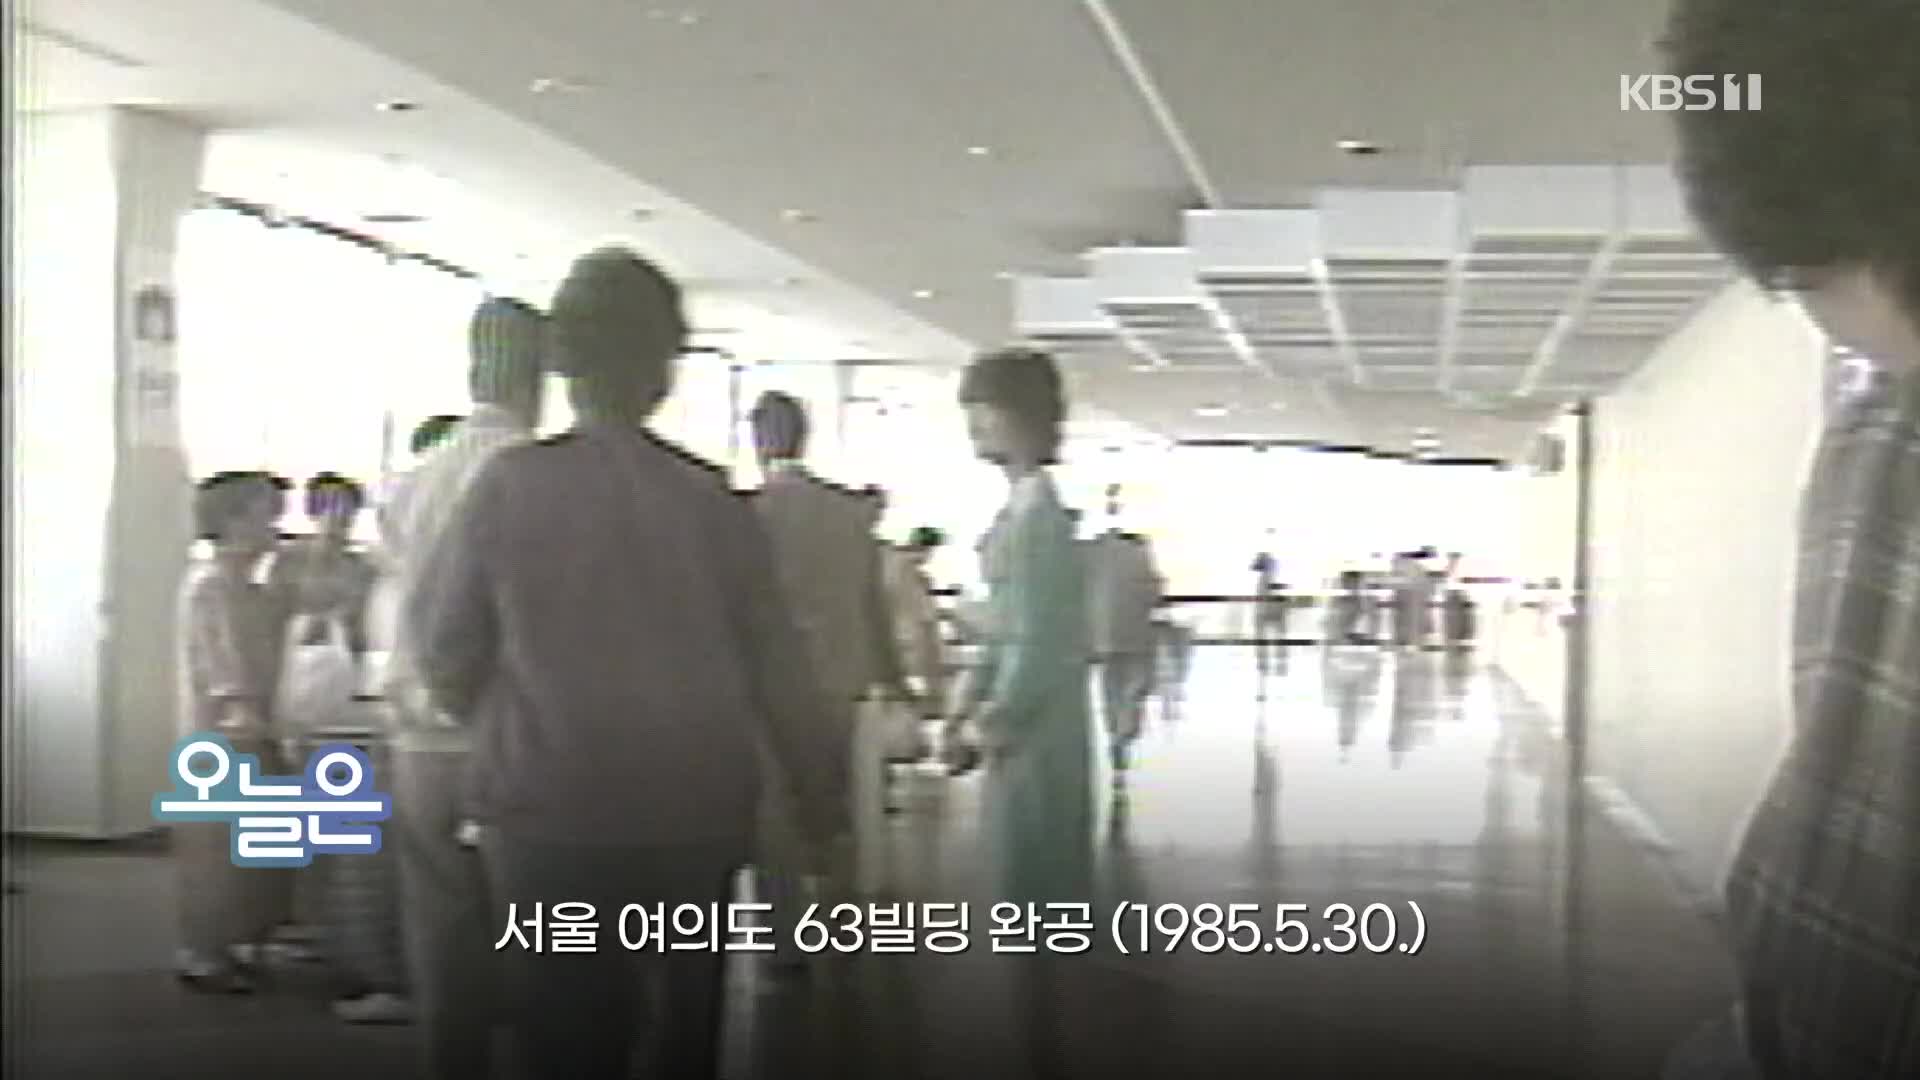 [오늘은] 서울 여의도 63빌딩 완공 (1985.5.30.)